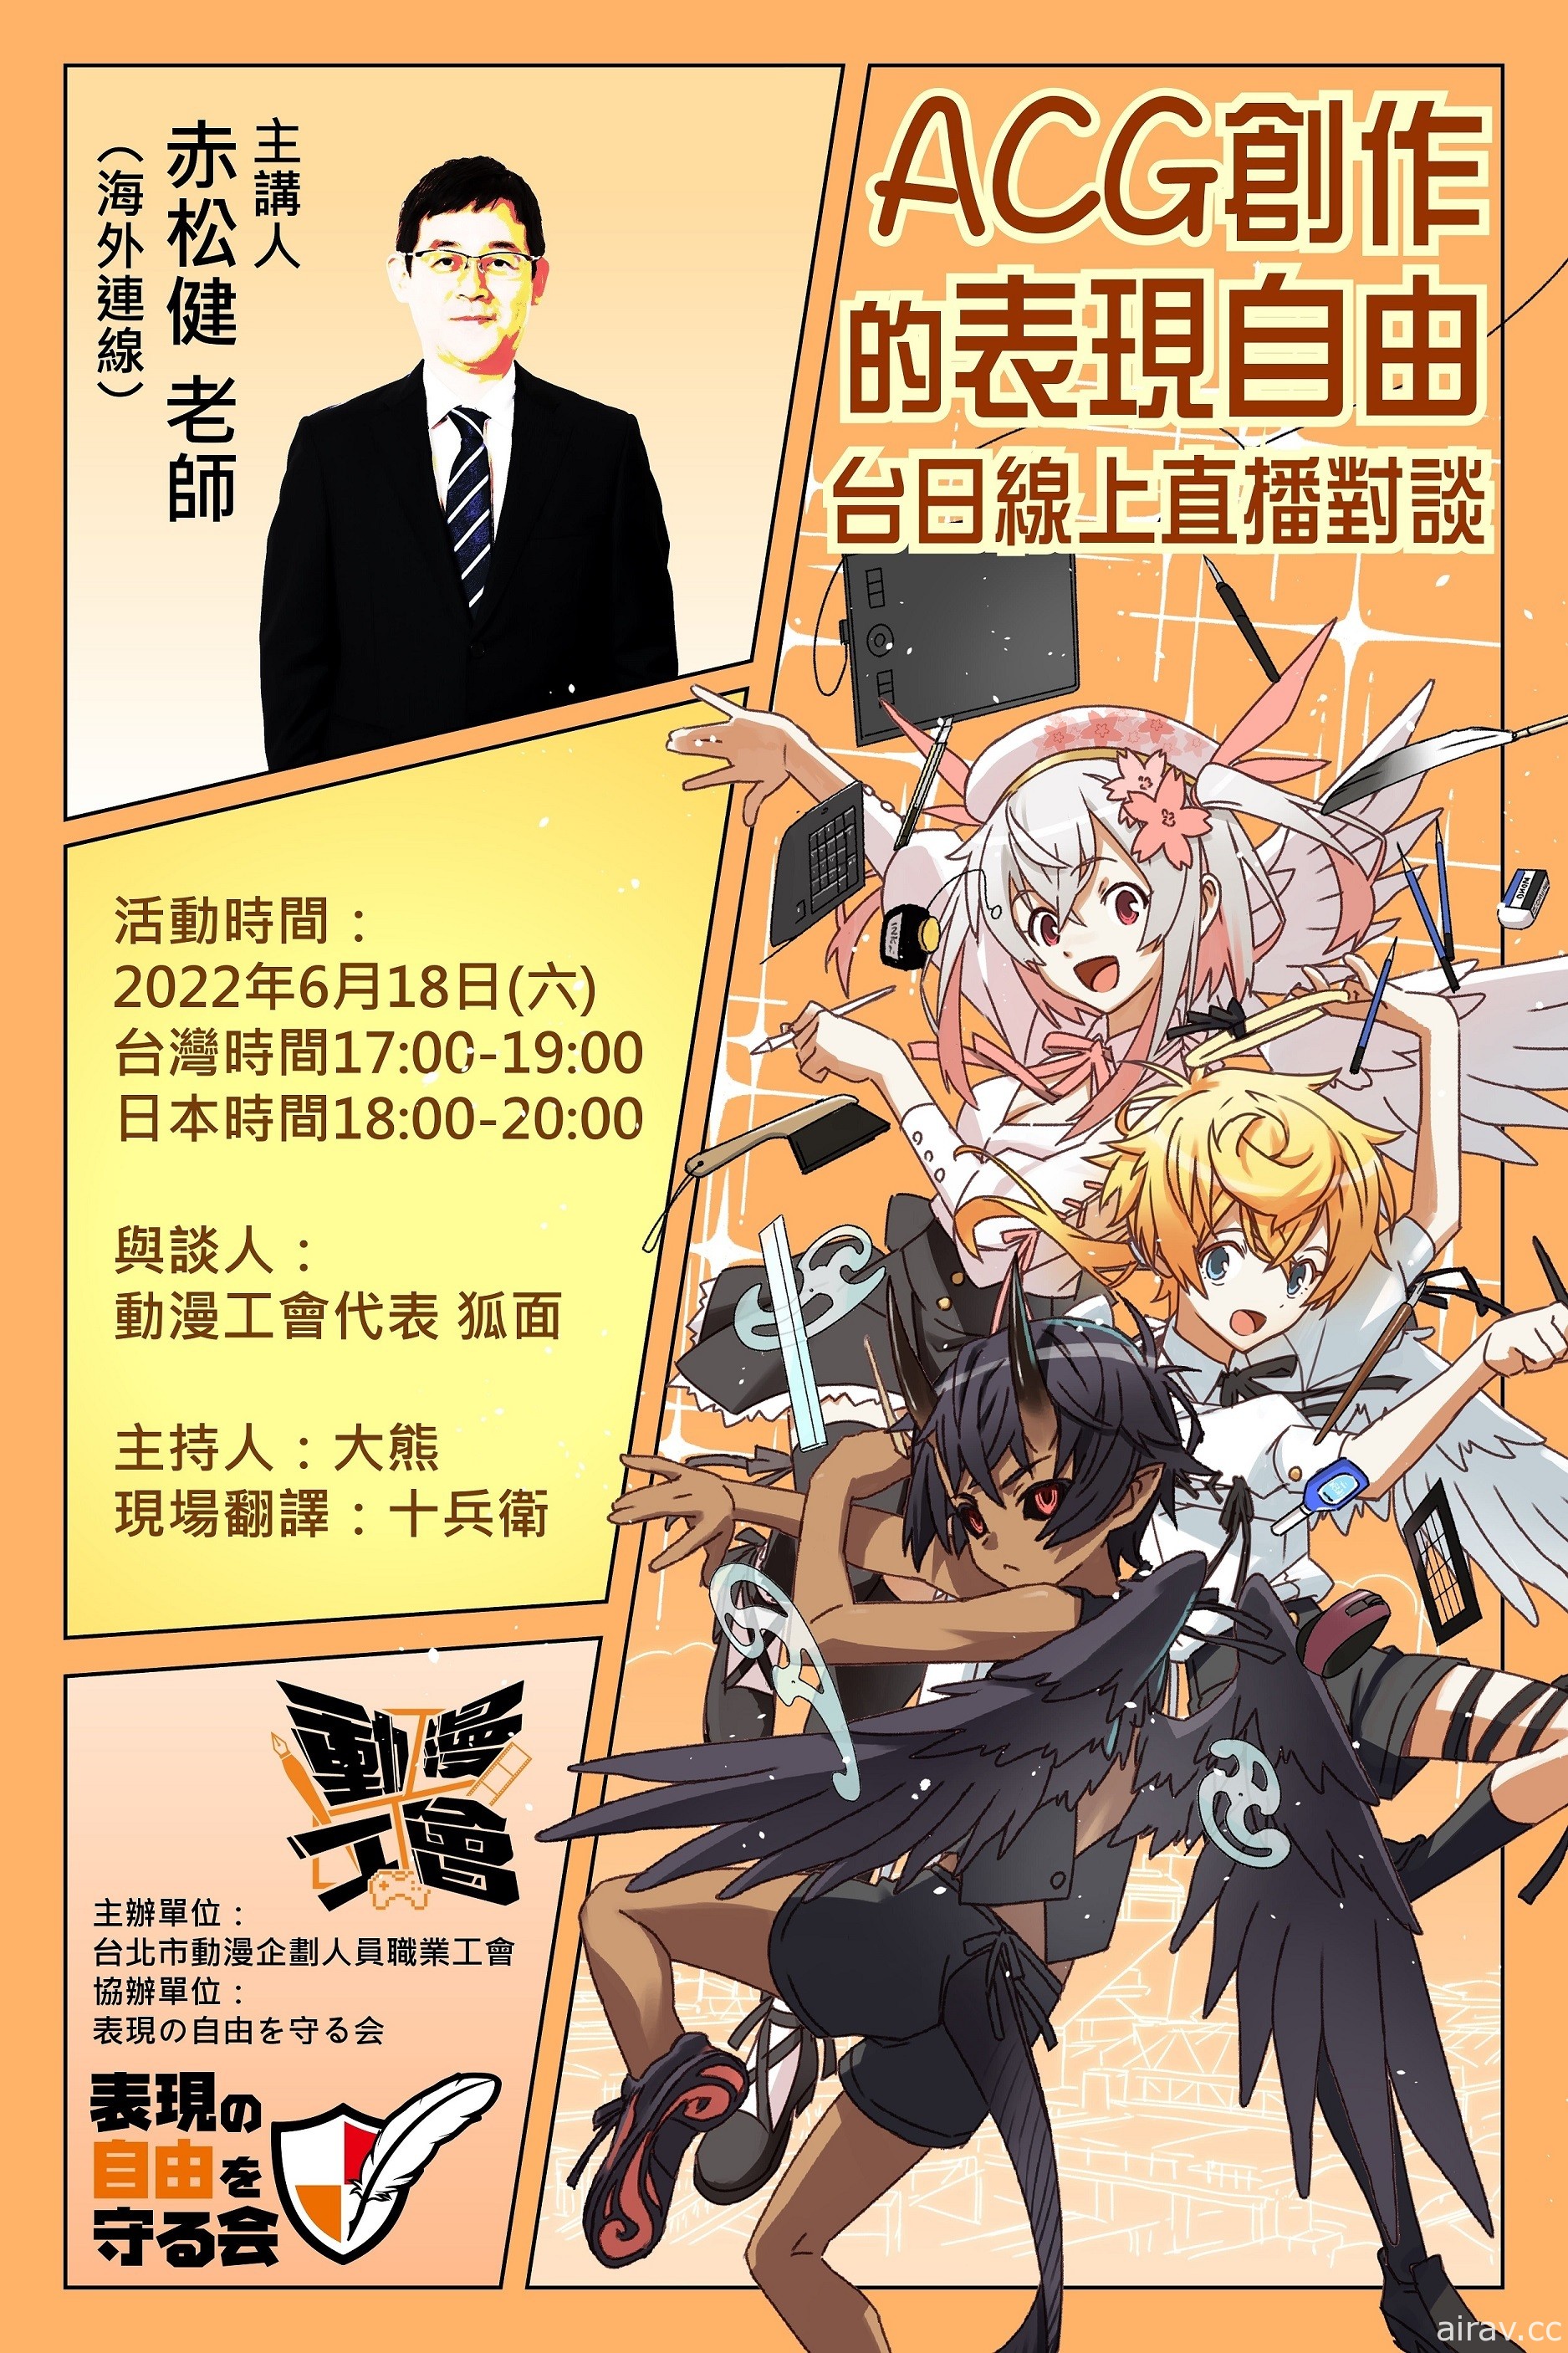 動漫創作的表現自由 漫畫家赤松健台日線上直播對談將於 6/18 登場